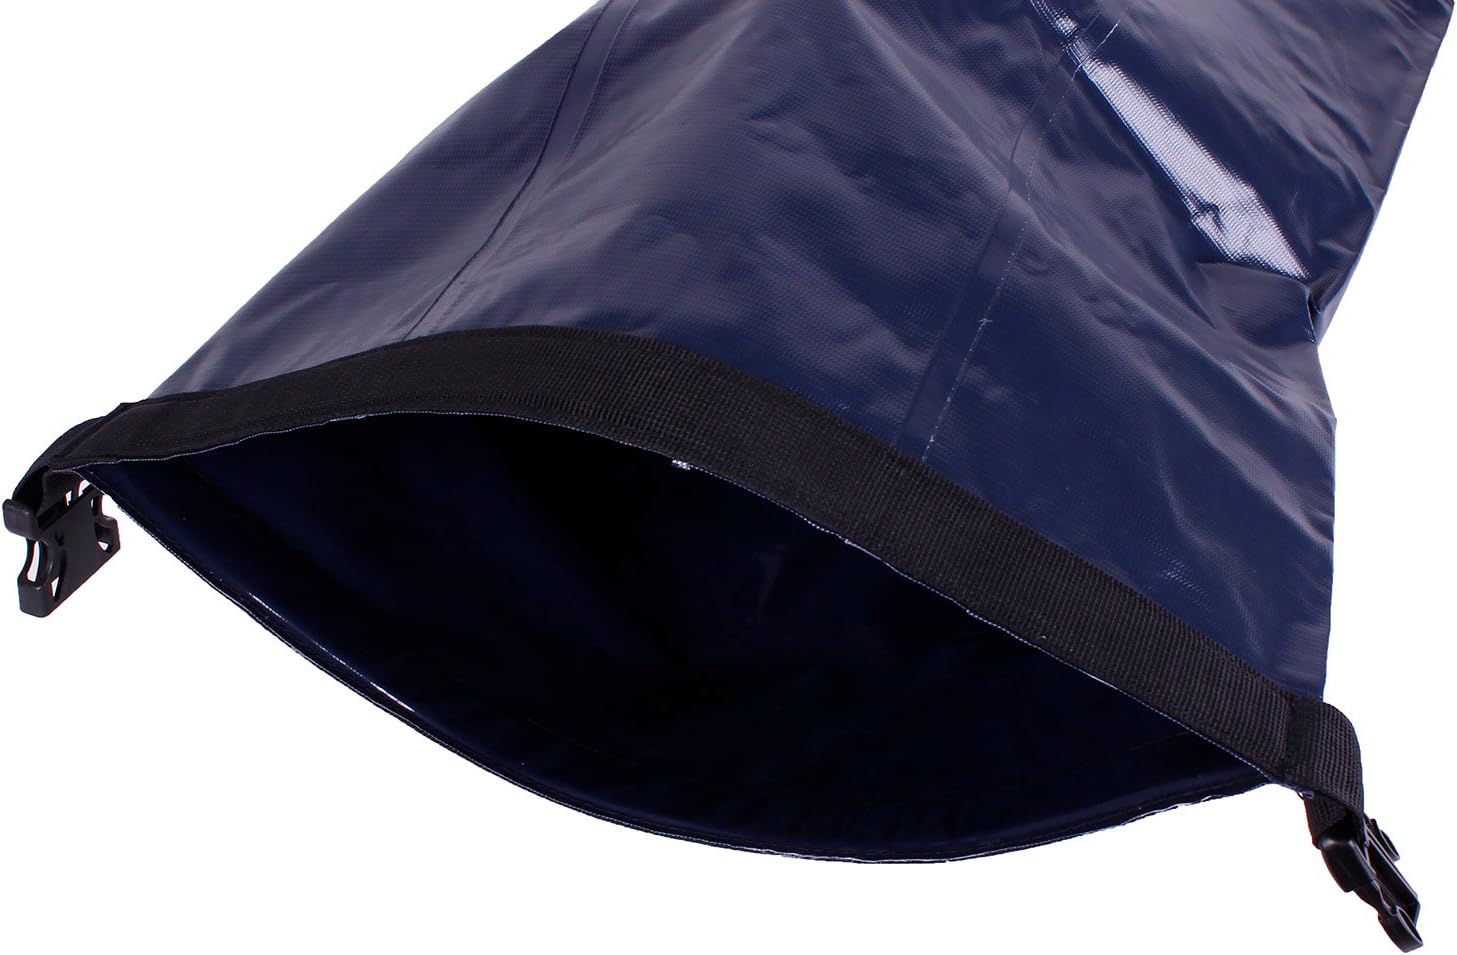 awn waterproof pack sack